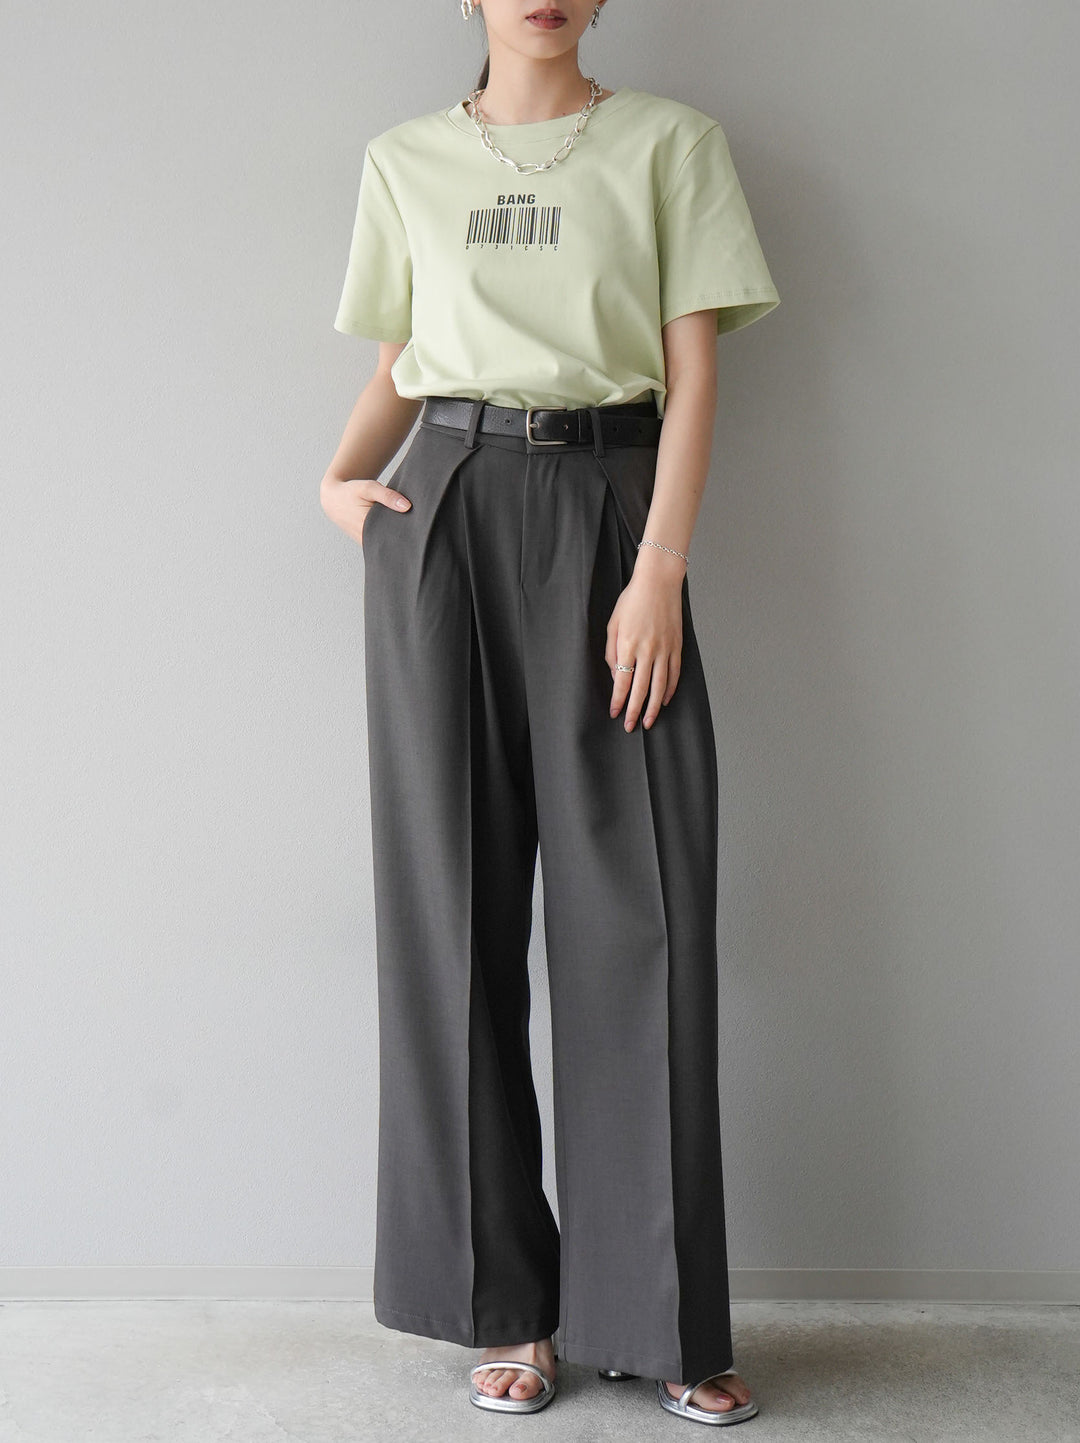 [SET]バーコードプリントTシャツ+デザインタックワイドパンツ(2set)